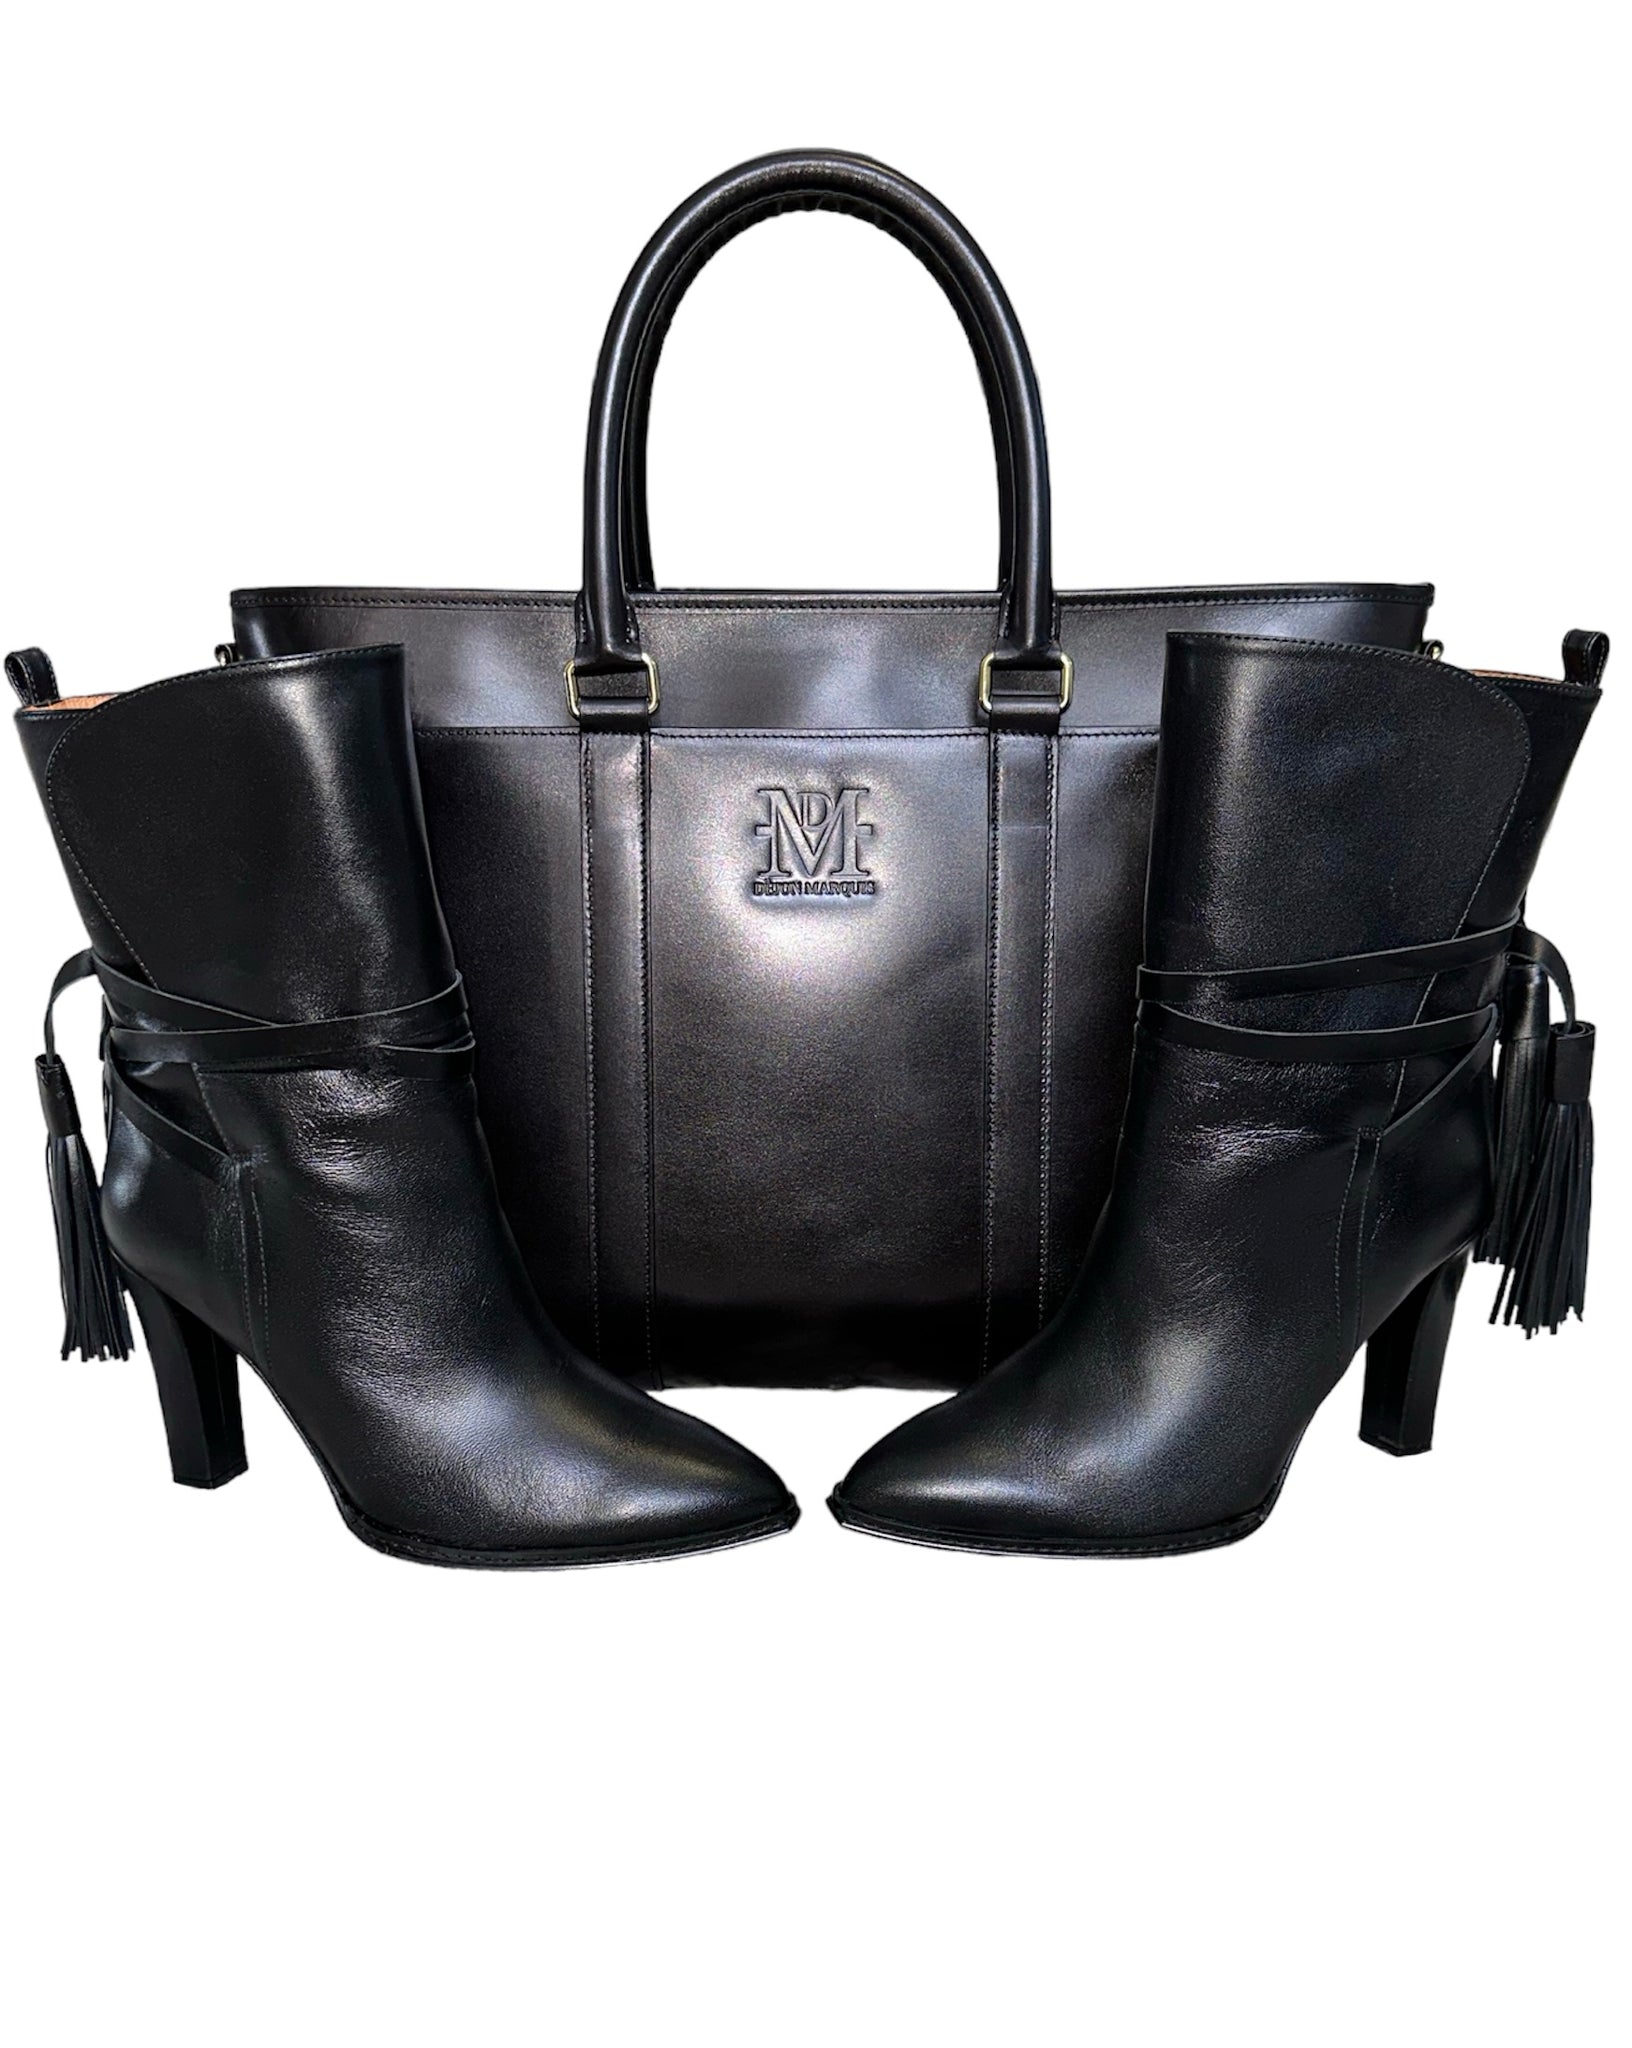 Dejon Marquis DM Leather Tote Bag